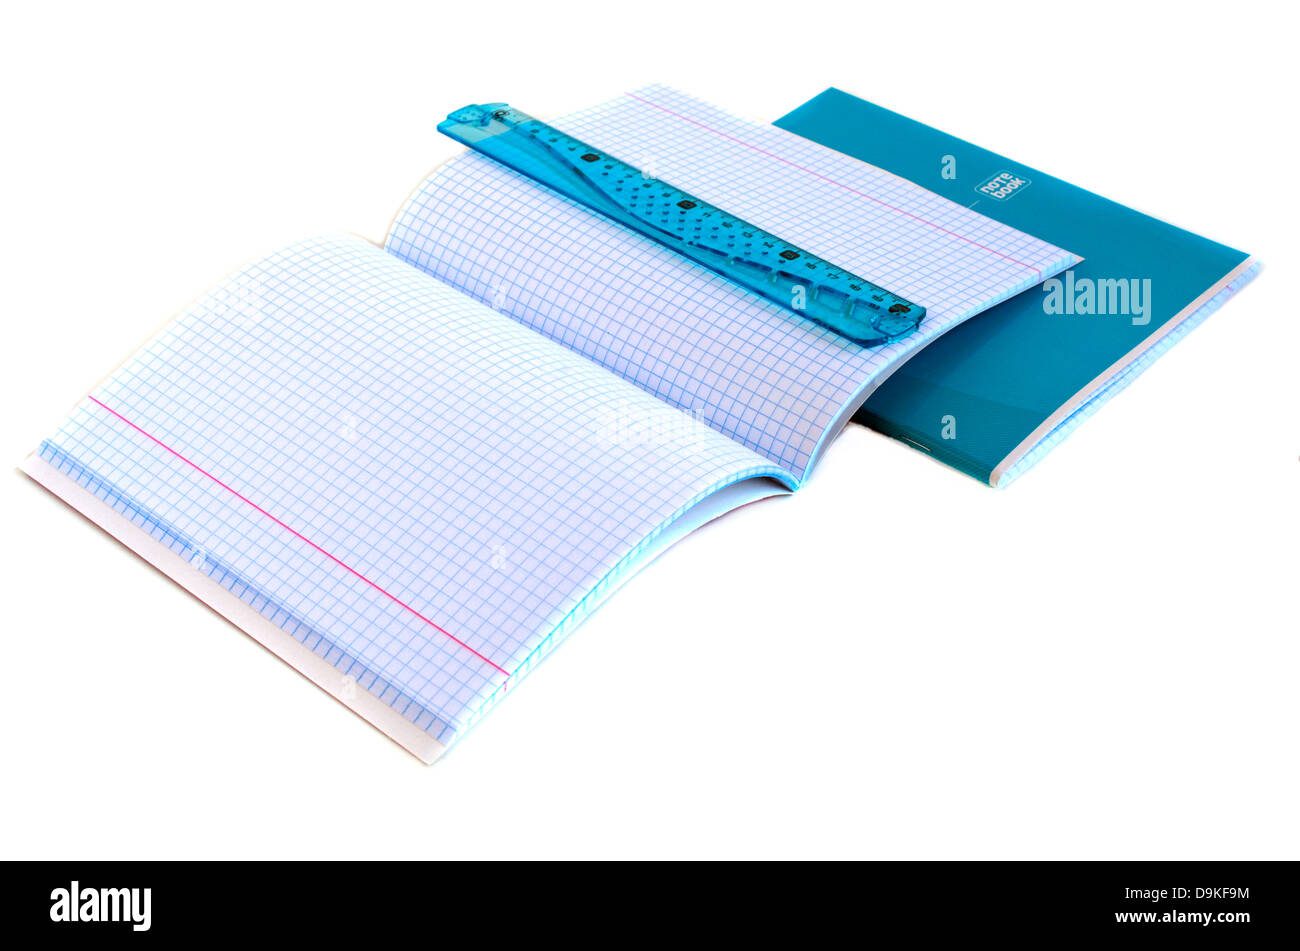 Forniture scolastiche - Notebook, penna, righello Foto Stock